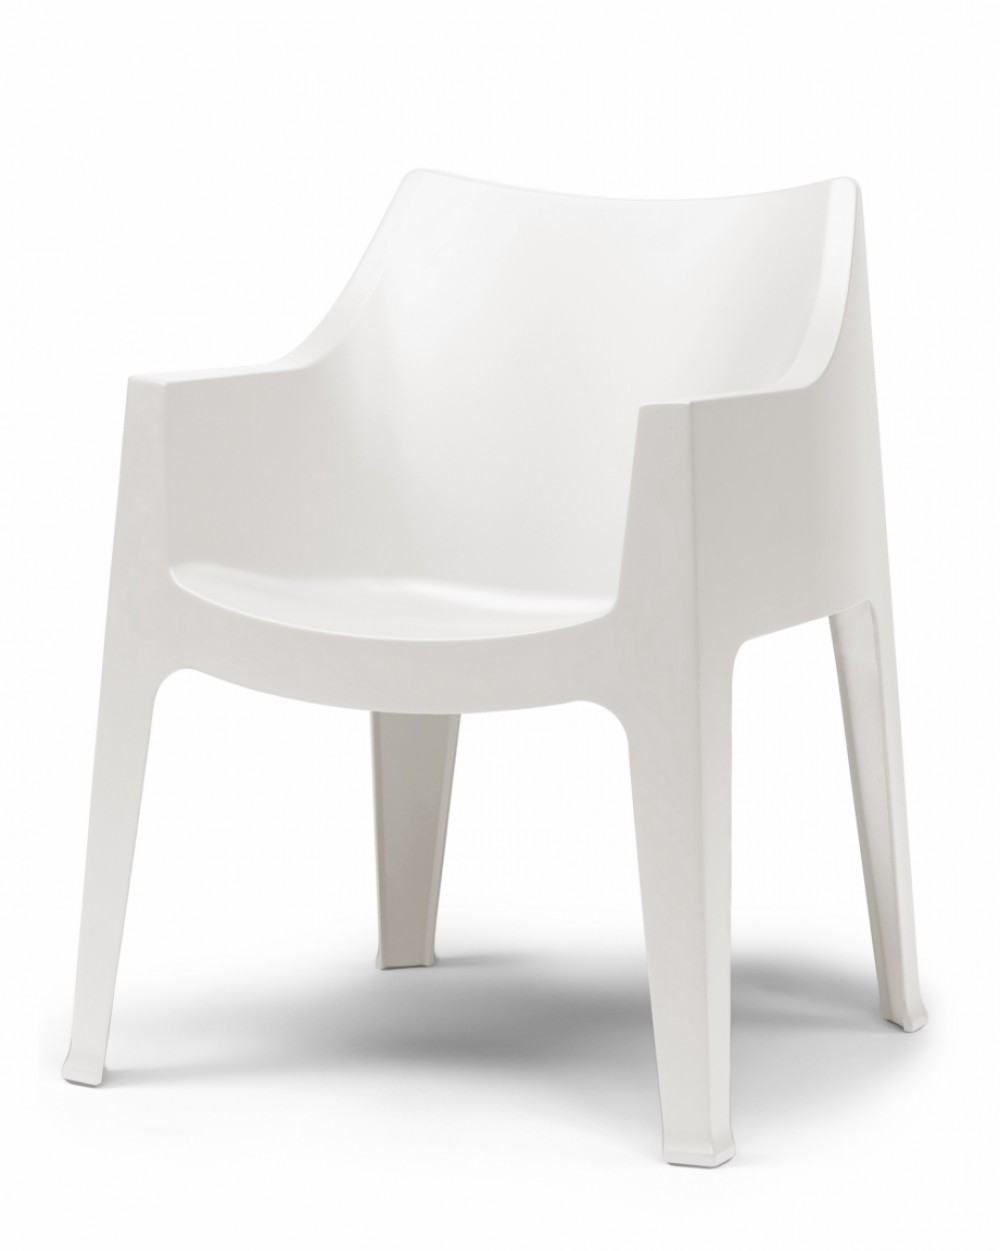 Outdoor stapelbar, Stuhl Kunststoff, Gartenstuhl weiß Möbel weiß